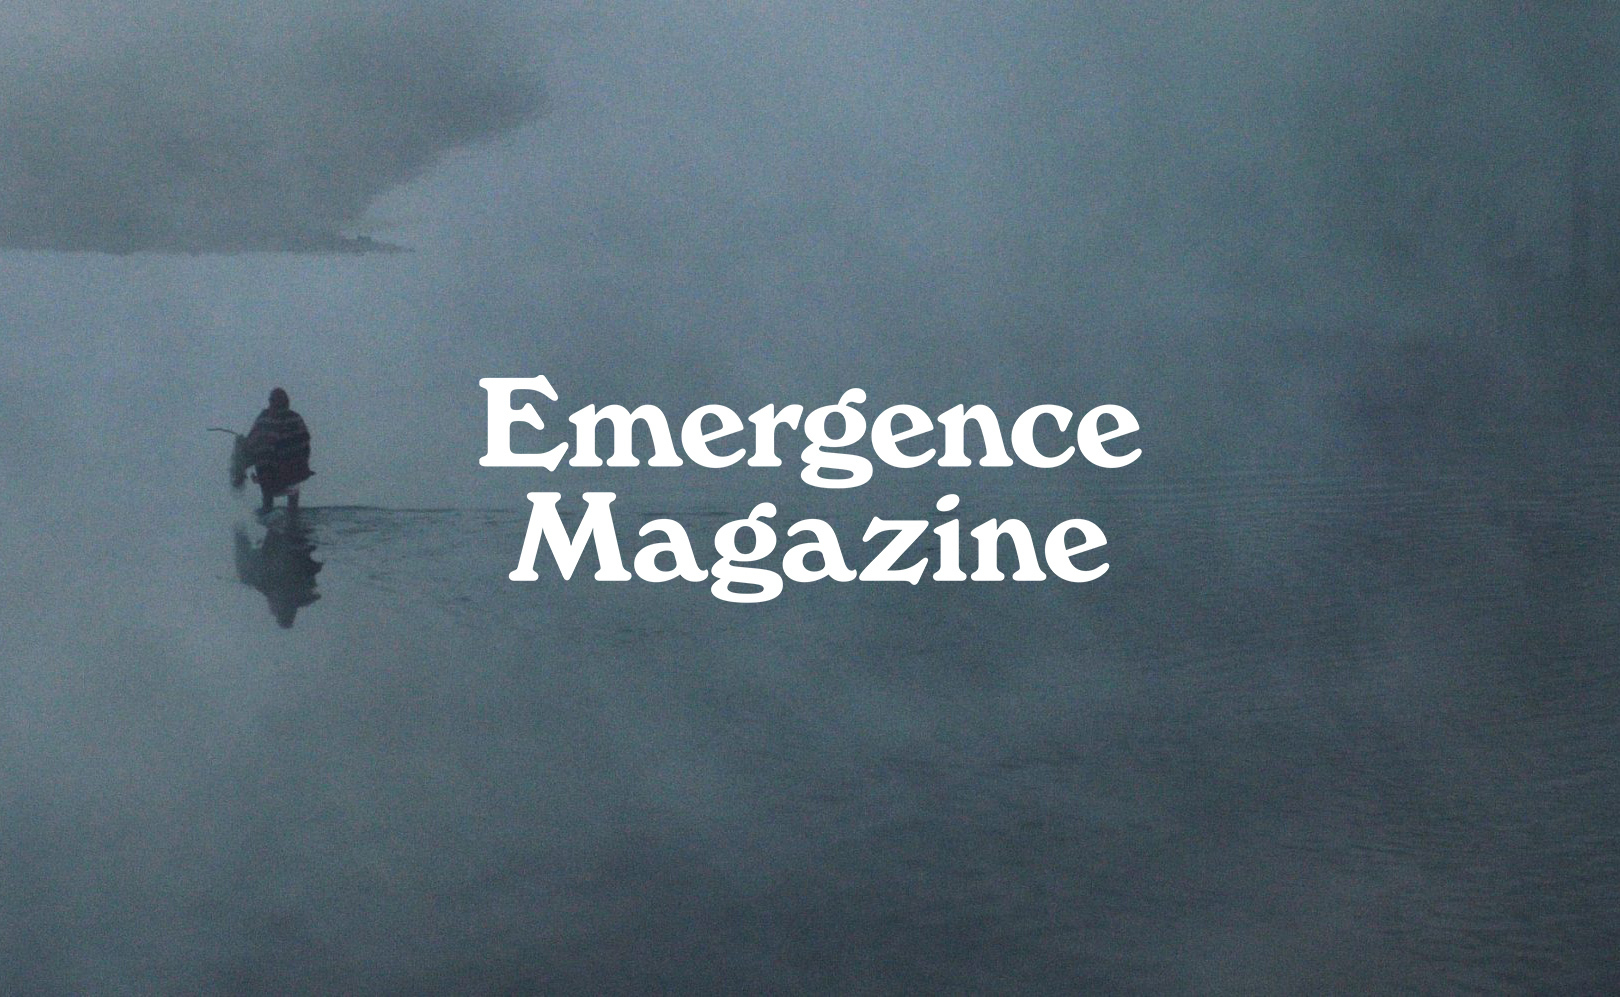 (c) Emergencemagazine.org